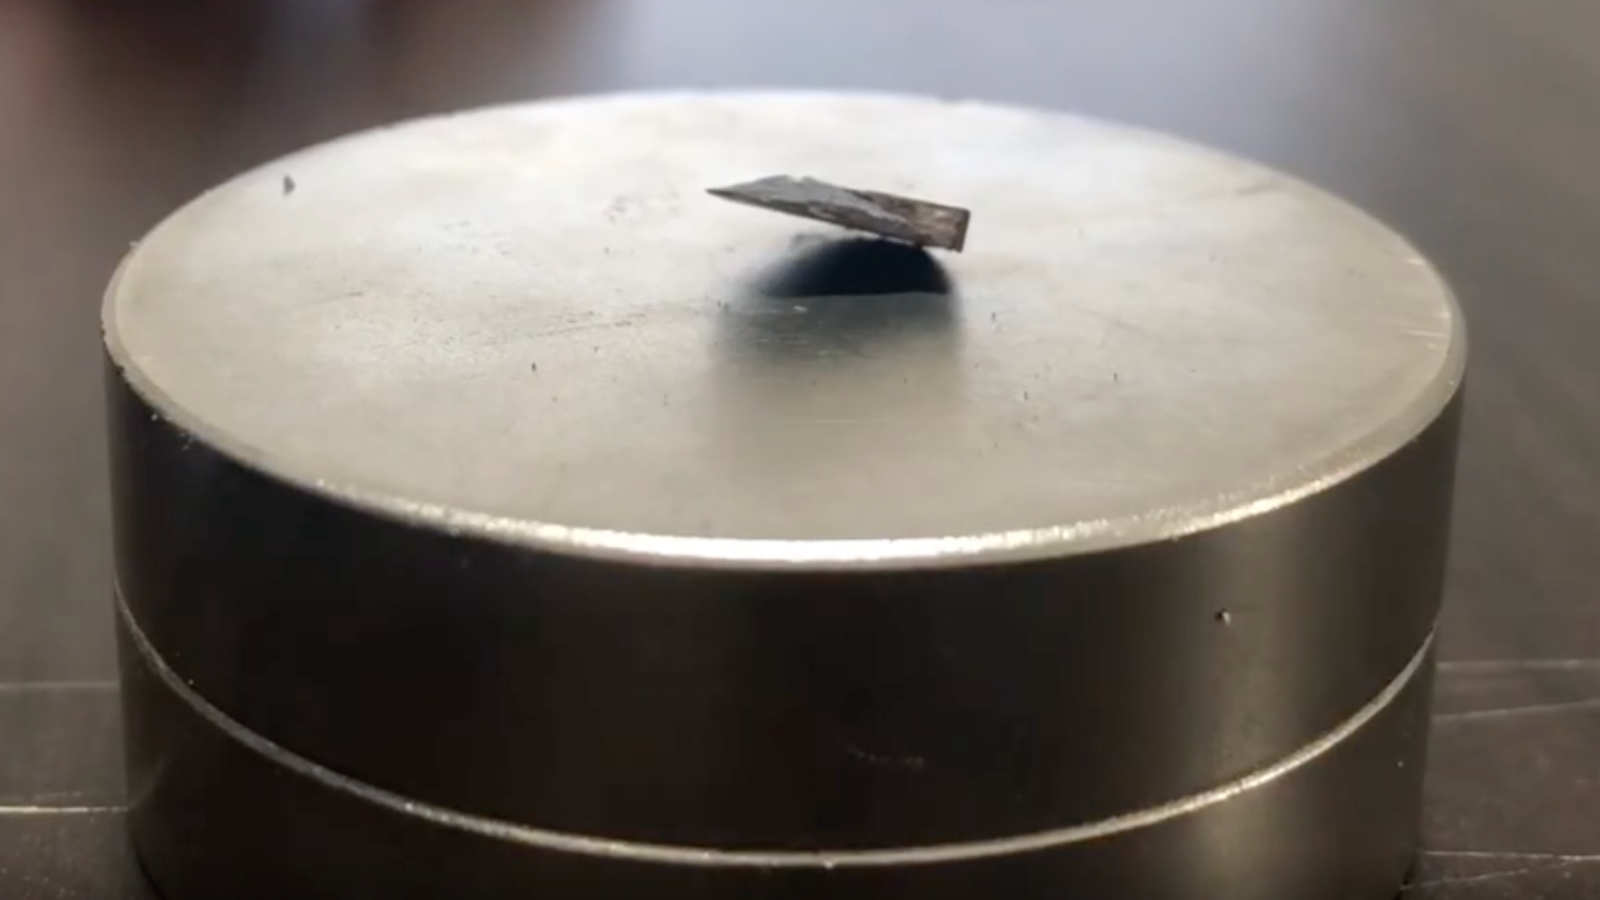 LK-99 : Cette « découverte » du supraconducteur pourrait-elle vraiment changer le monde ?  |  Actualités scientifiques et techniques